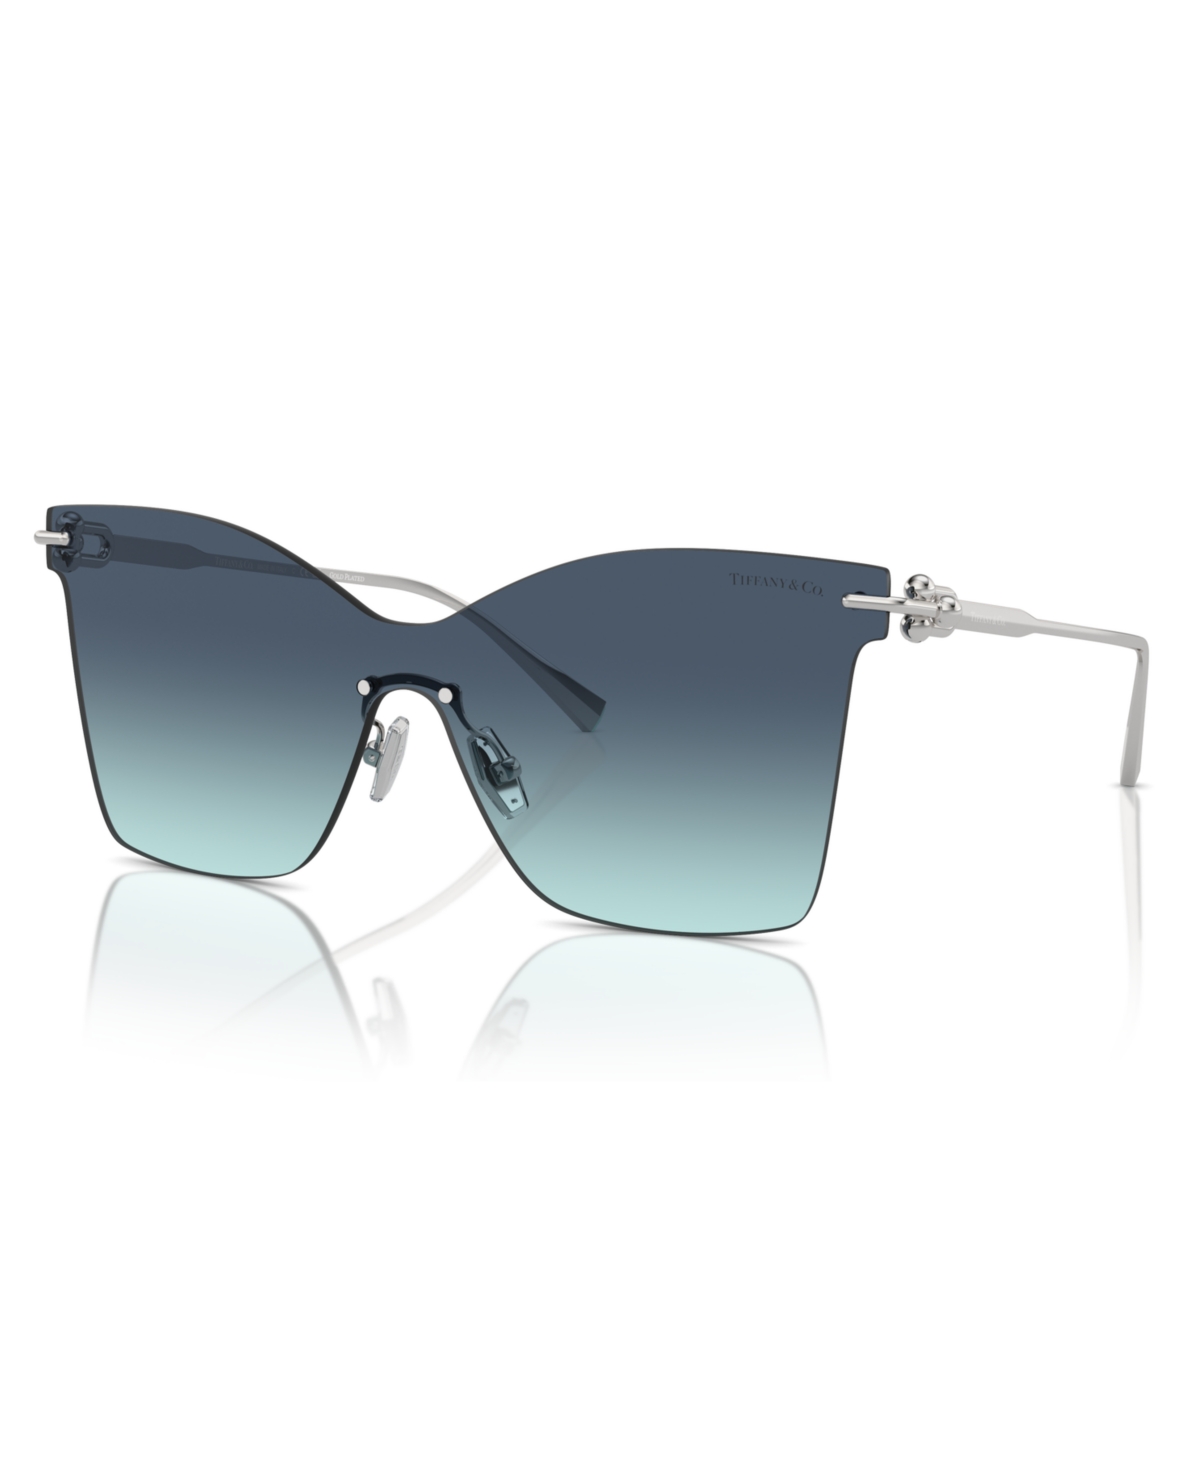 Tiffany & Co Women's Sunglasses, Tf3103k In Azure Gradient Blue